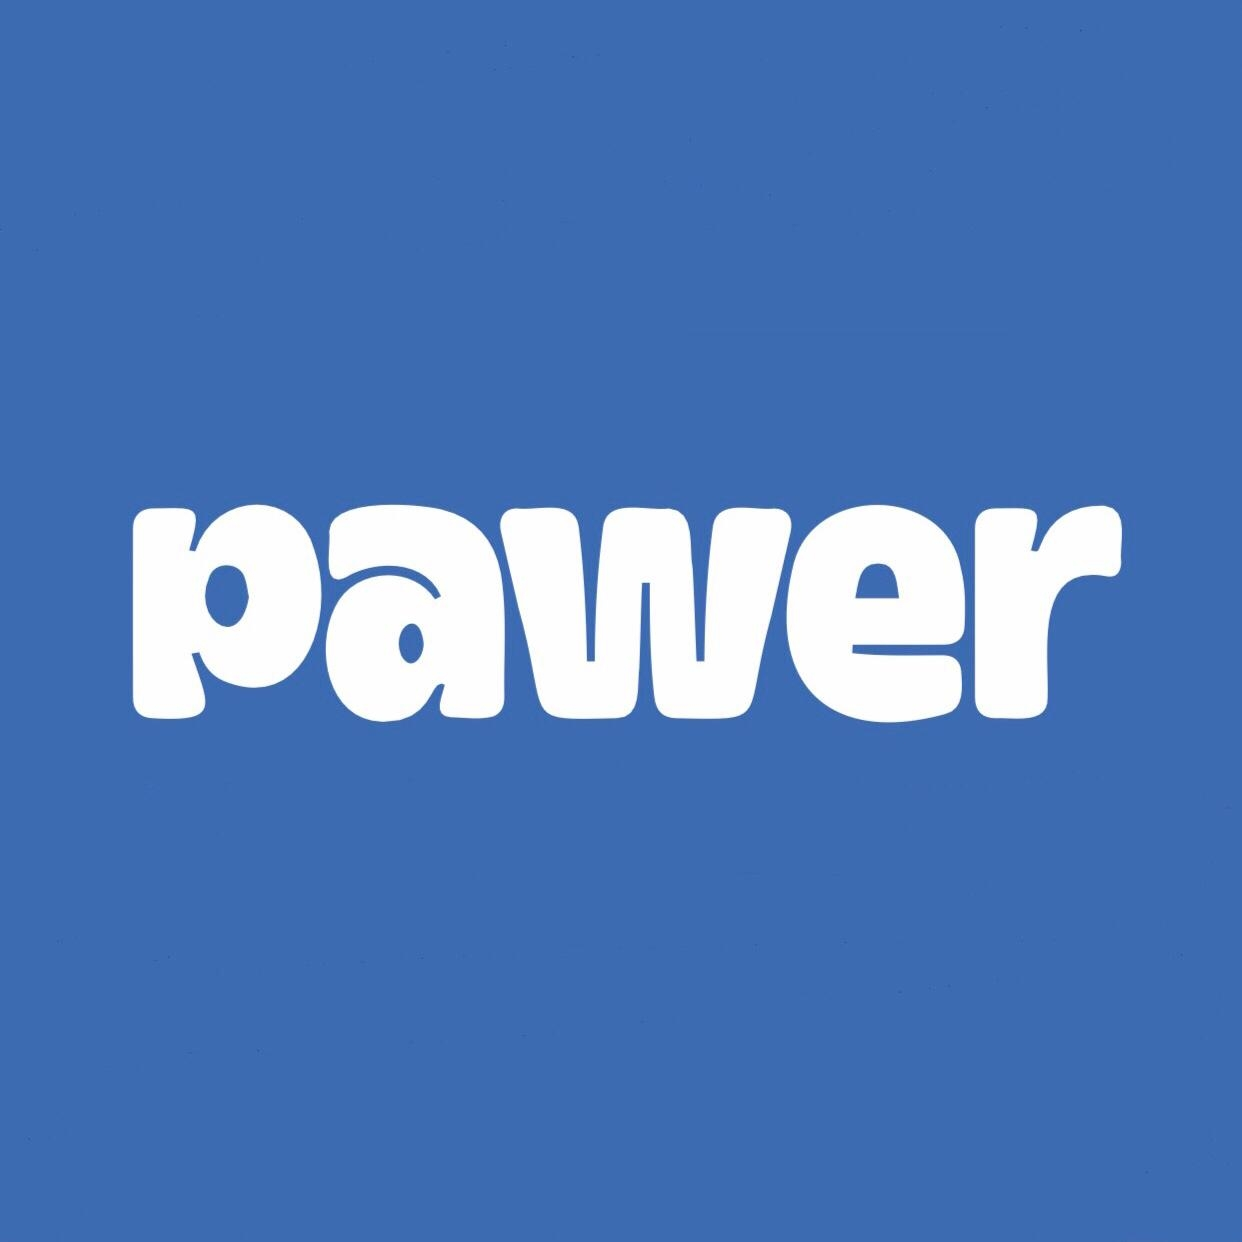 Brand: Pawer